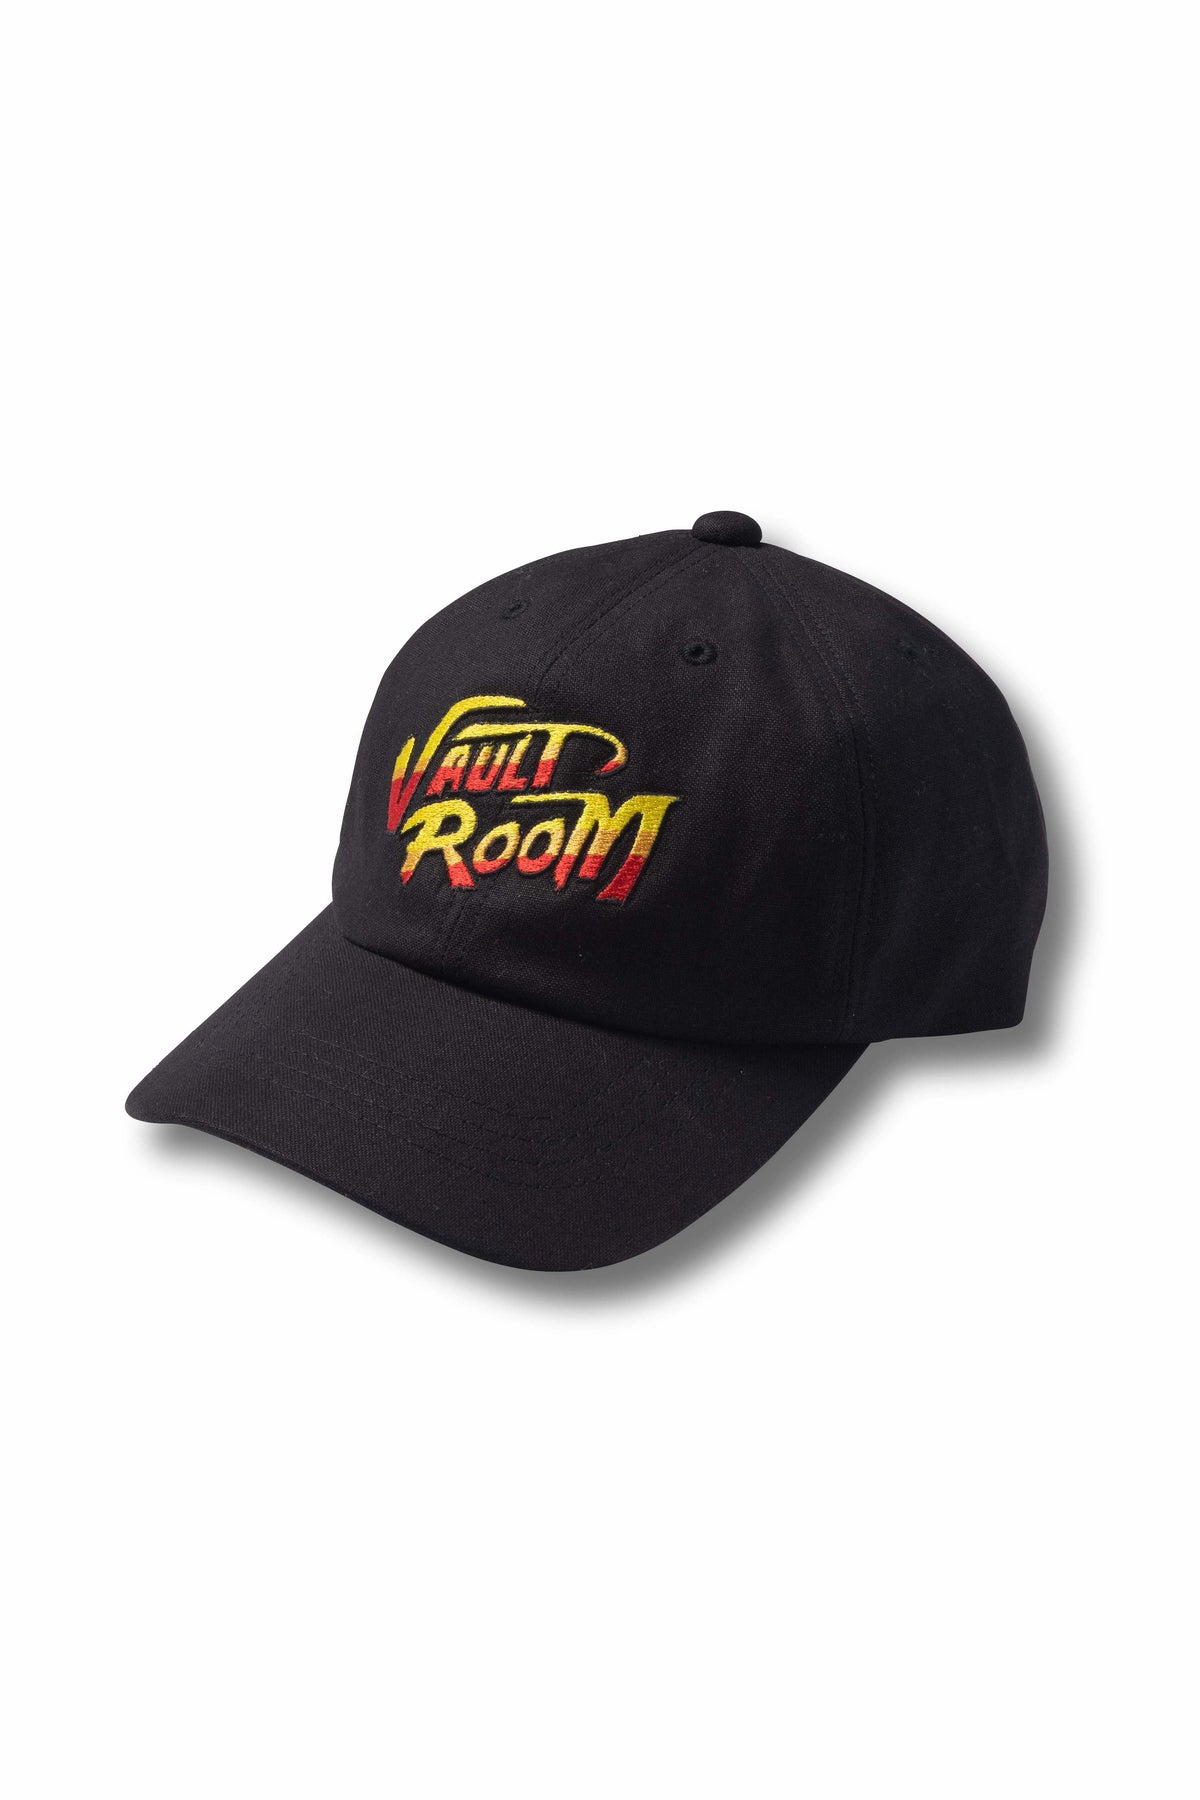 vaultroom LOGO CAP BLK - 帽子